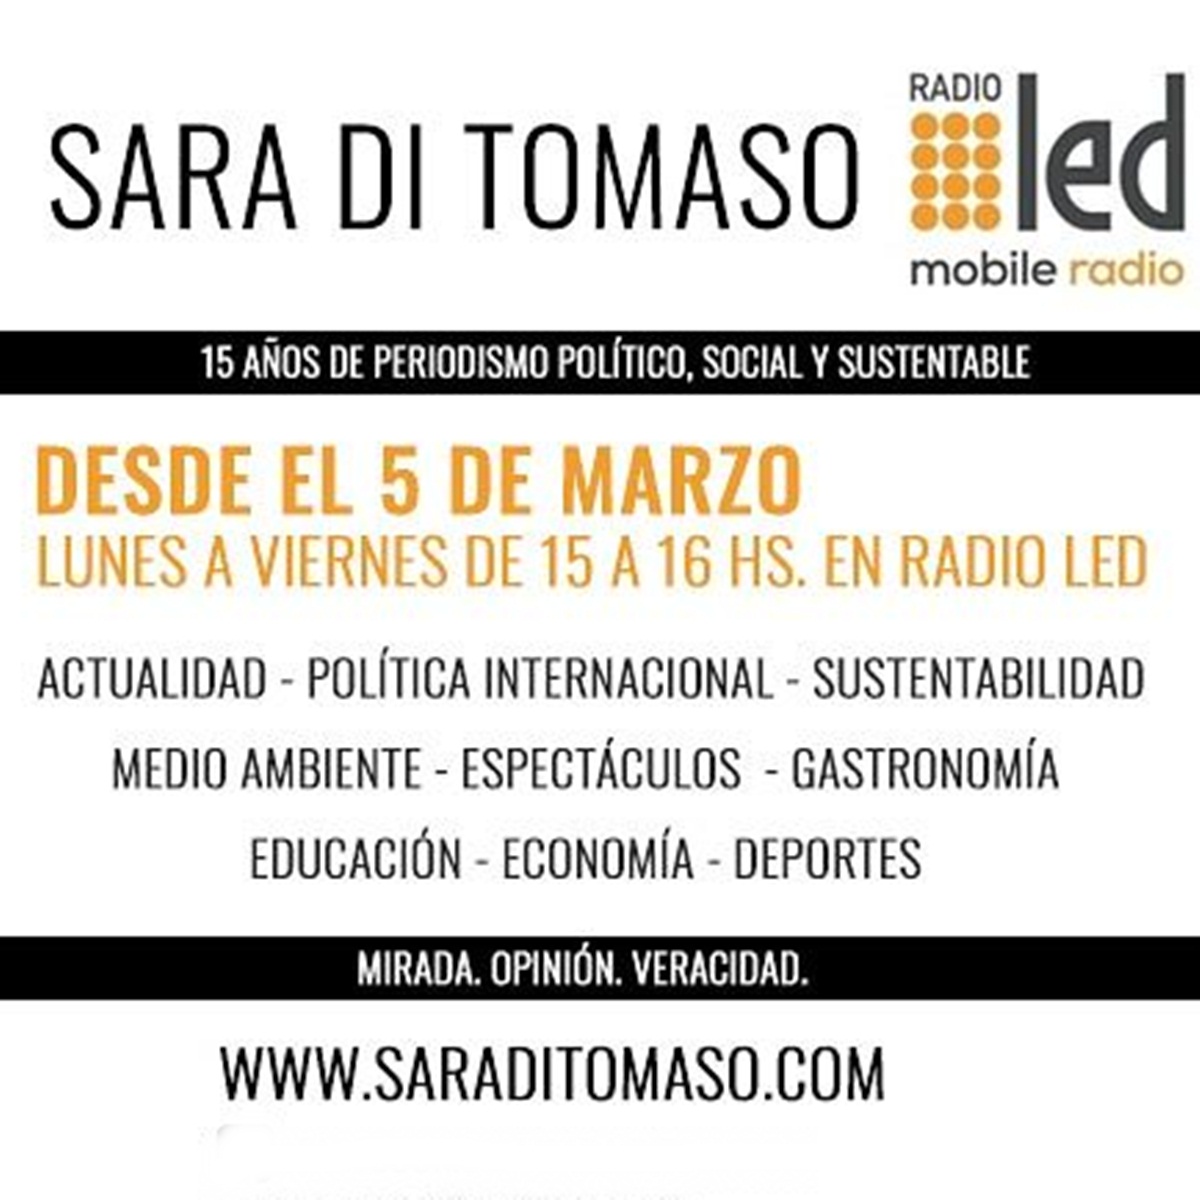 #Podcast Tercer Tiempo | 18.07: #AportantesTruchos @TereGarciaOK y #CaidaCabello Dr Gonzalo Wiersba